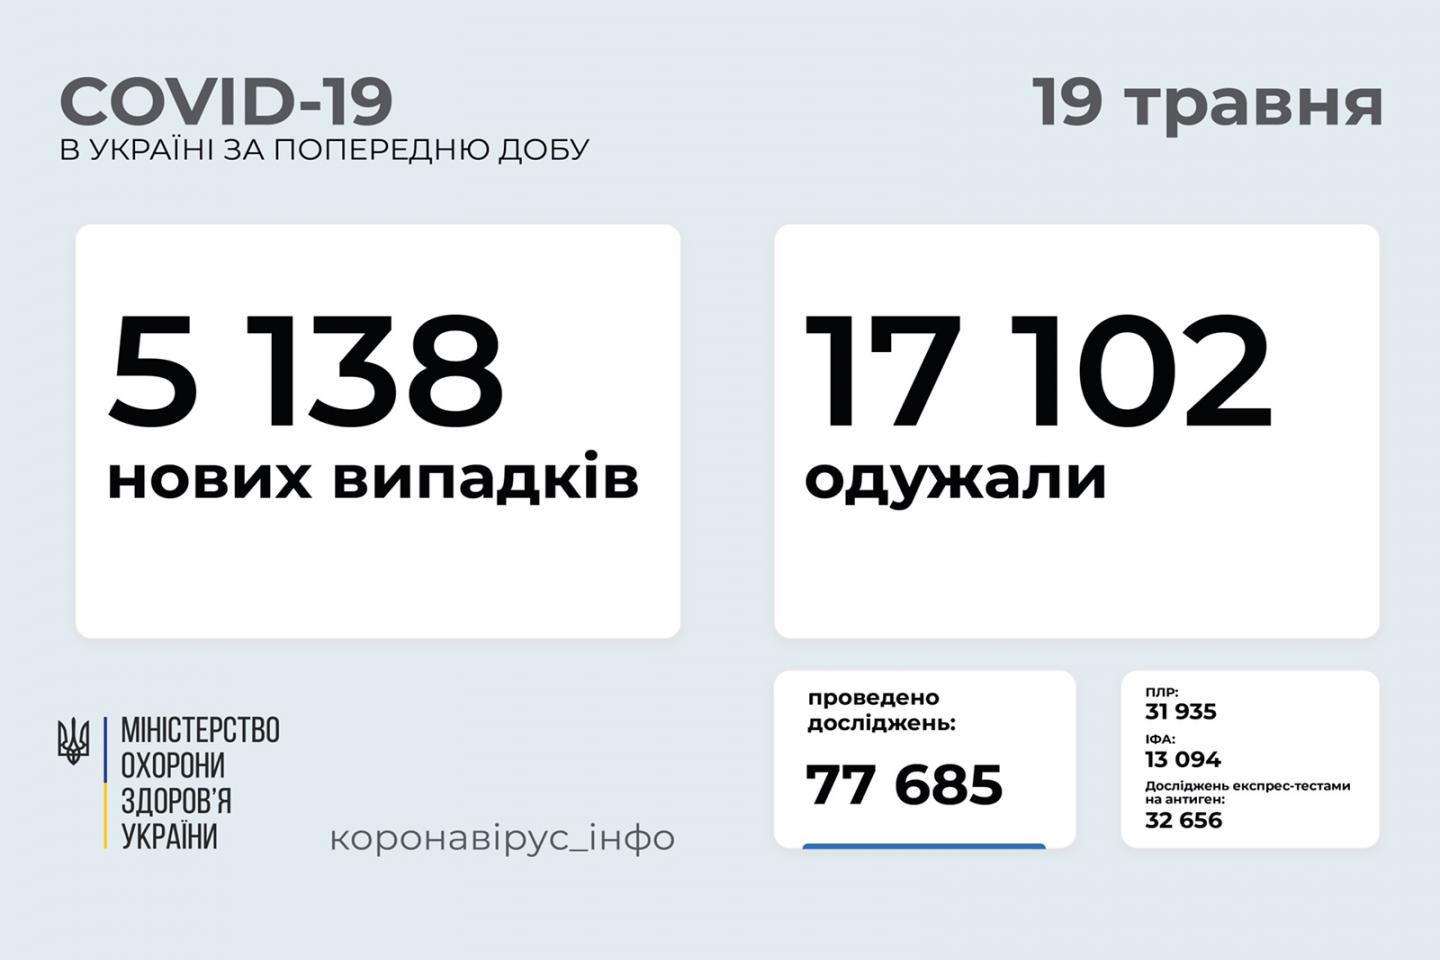 http://dunrada.gov.ua/uploadfile/archive_news/2021/05/19/2021-05-19_8120/images/images-56325.jpg